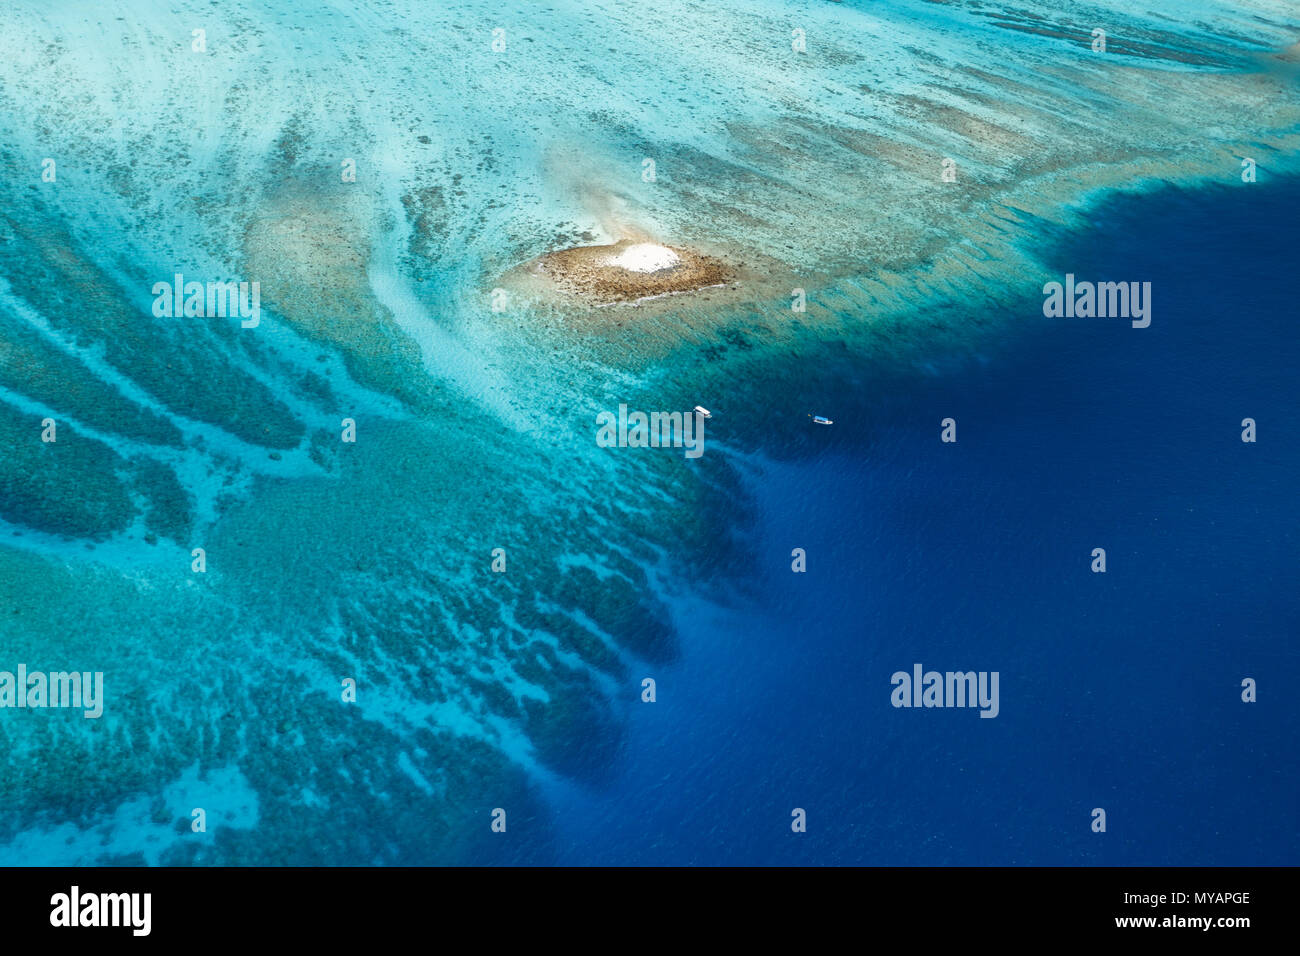 Vue aérienne d'un grand récif corallien coloré entourant une minuscule île de sable blanc avec deux bateaux à proximité Banque D'Images